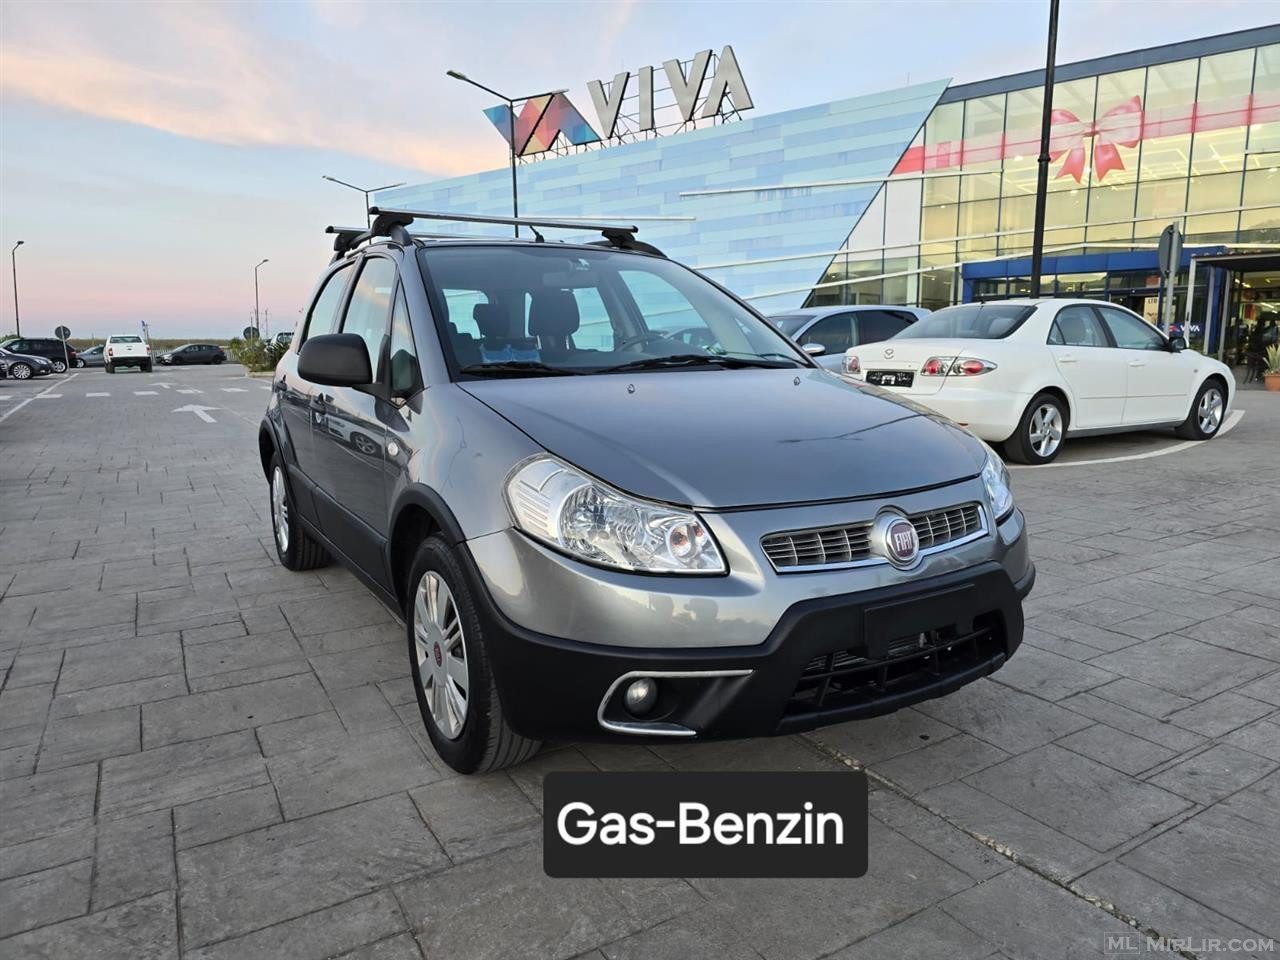 Fiat Sedici Gas-Benzin 2011